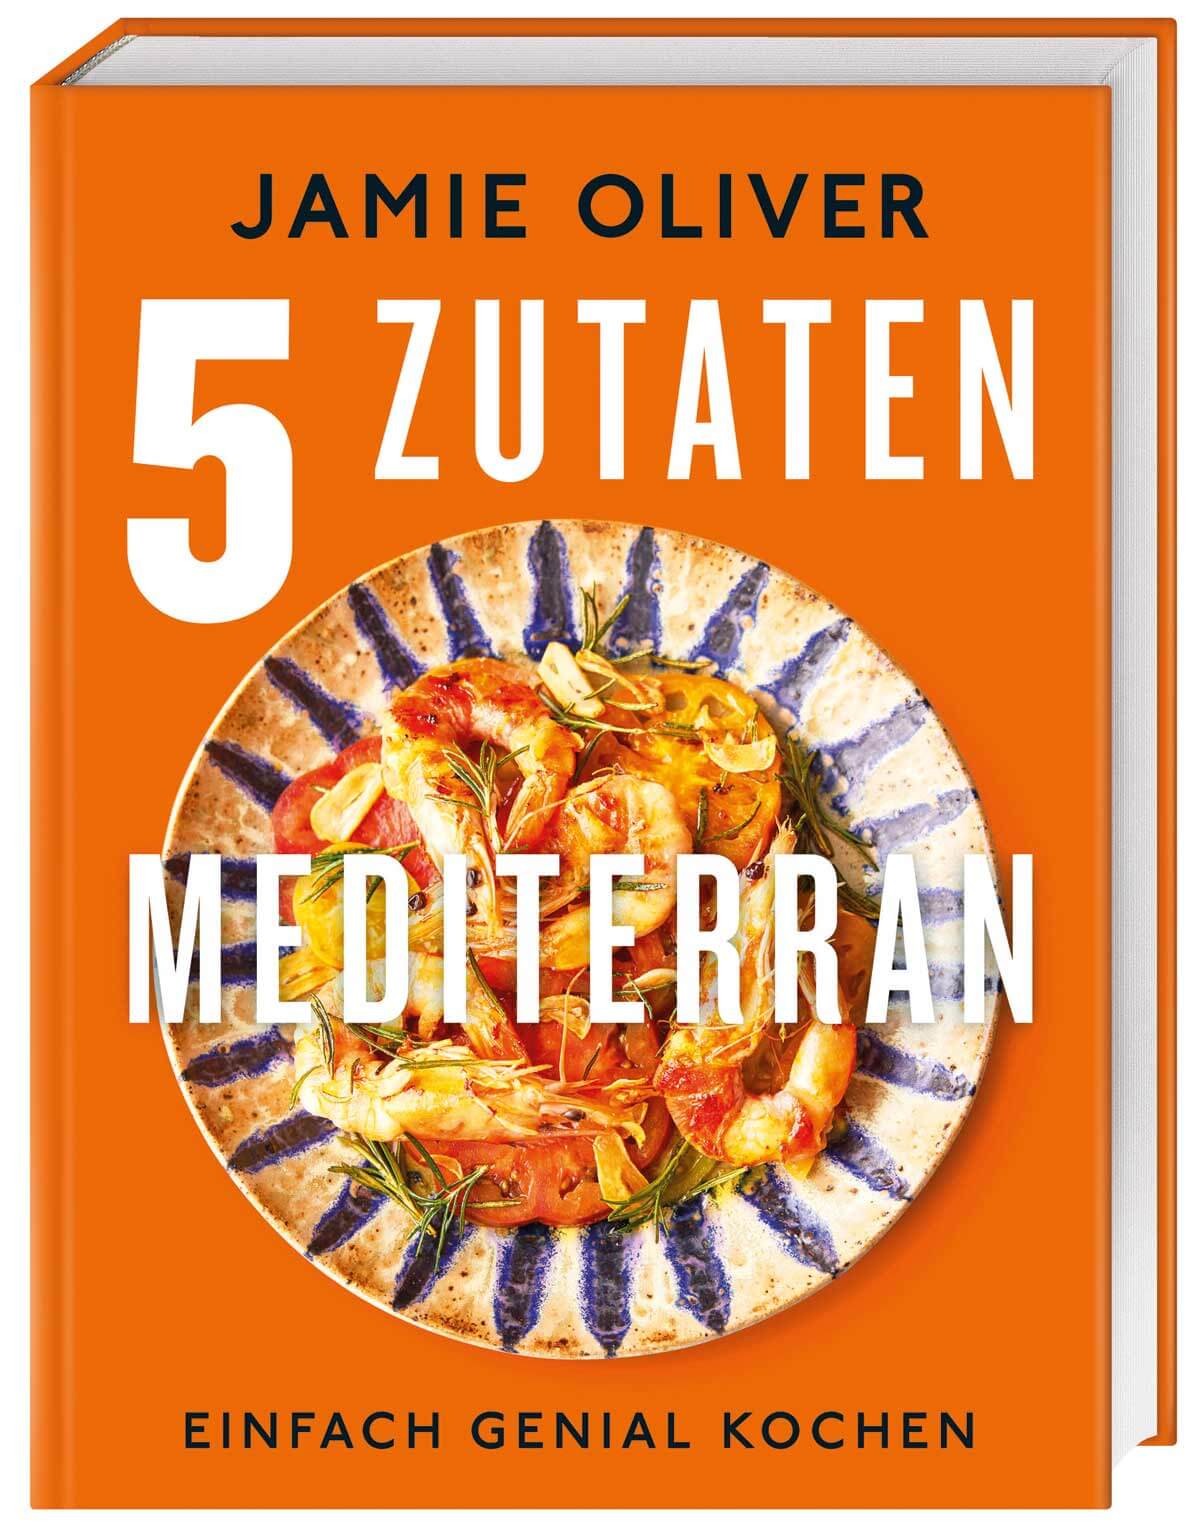 Jamie Oliver 5 Zutaten mediterran Kochbuch Cover